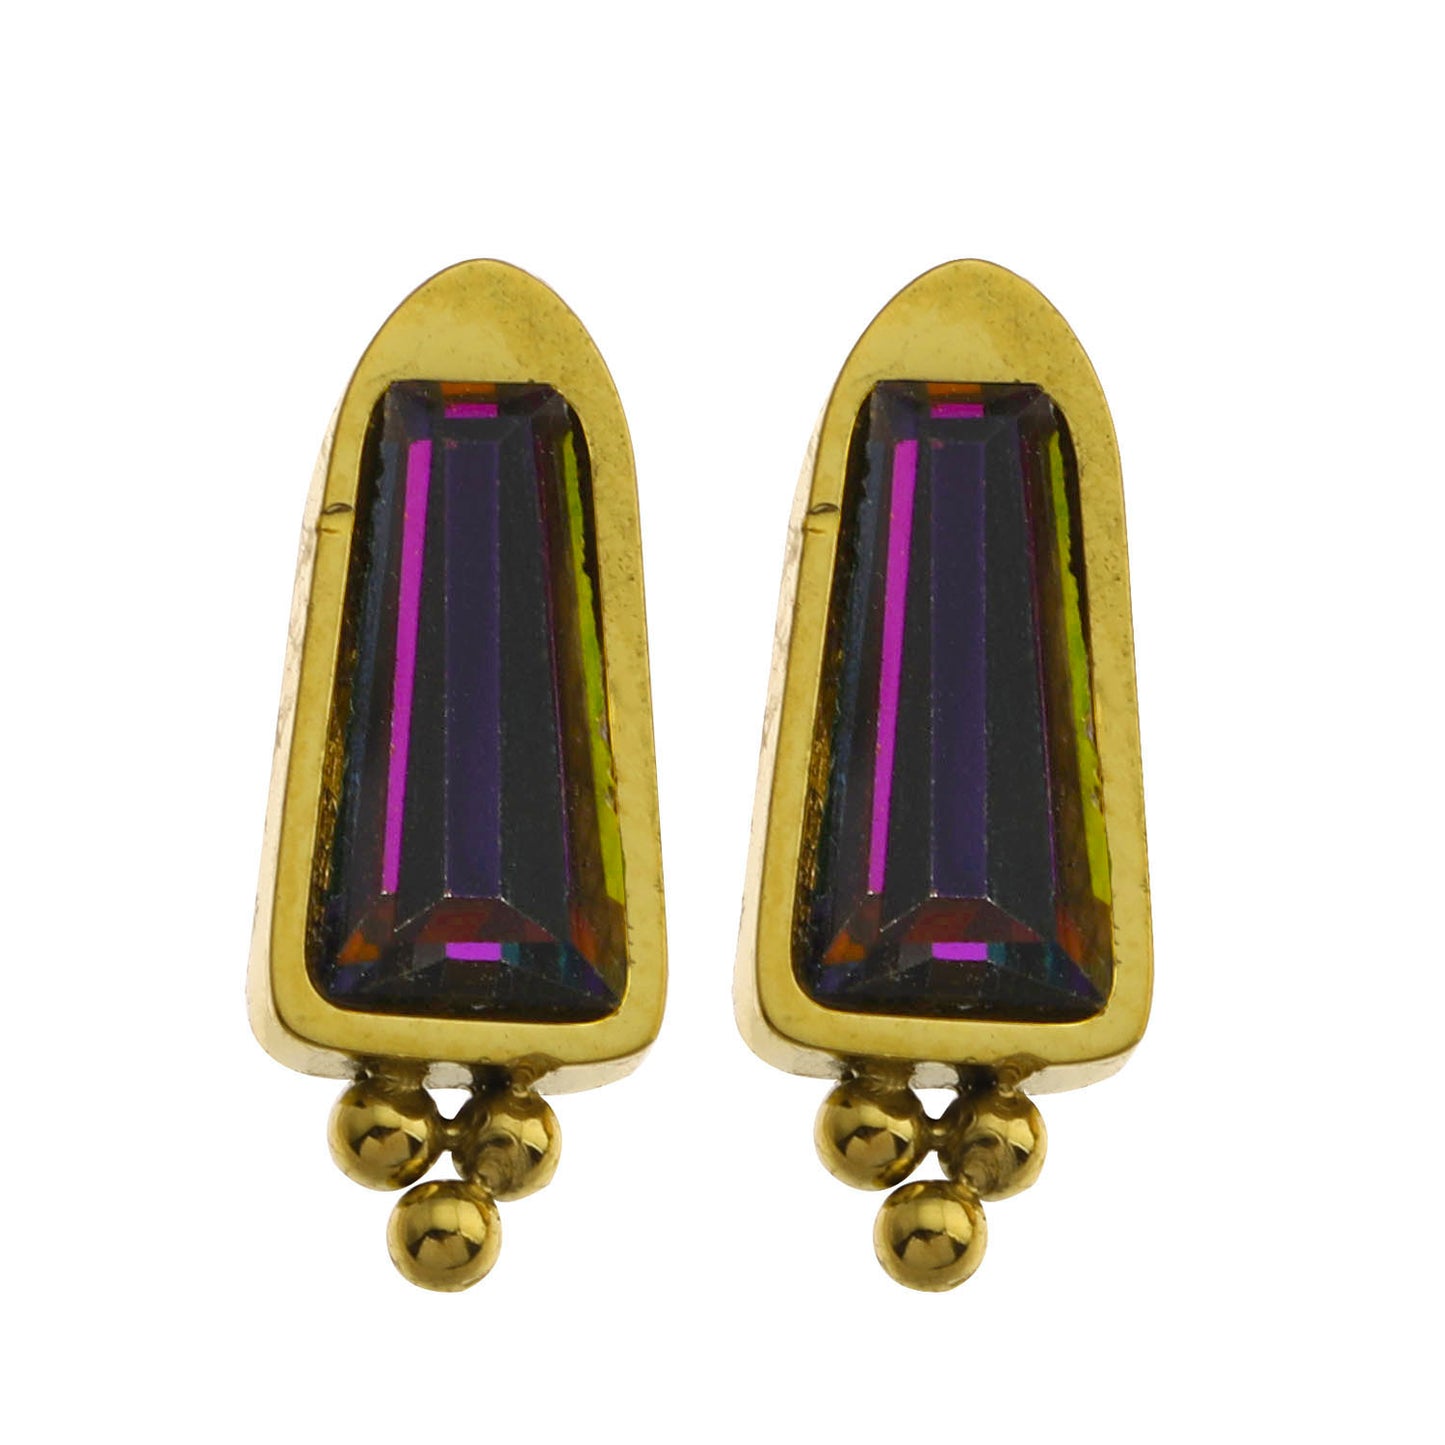 Style: KERSTIN 122215 Vintage Inspired Crystal Stud Earrings